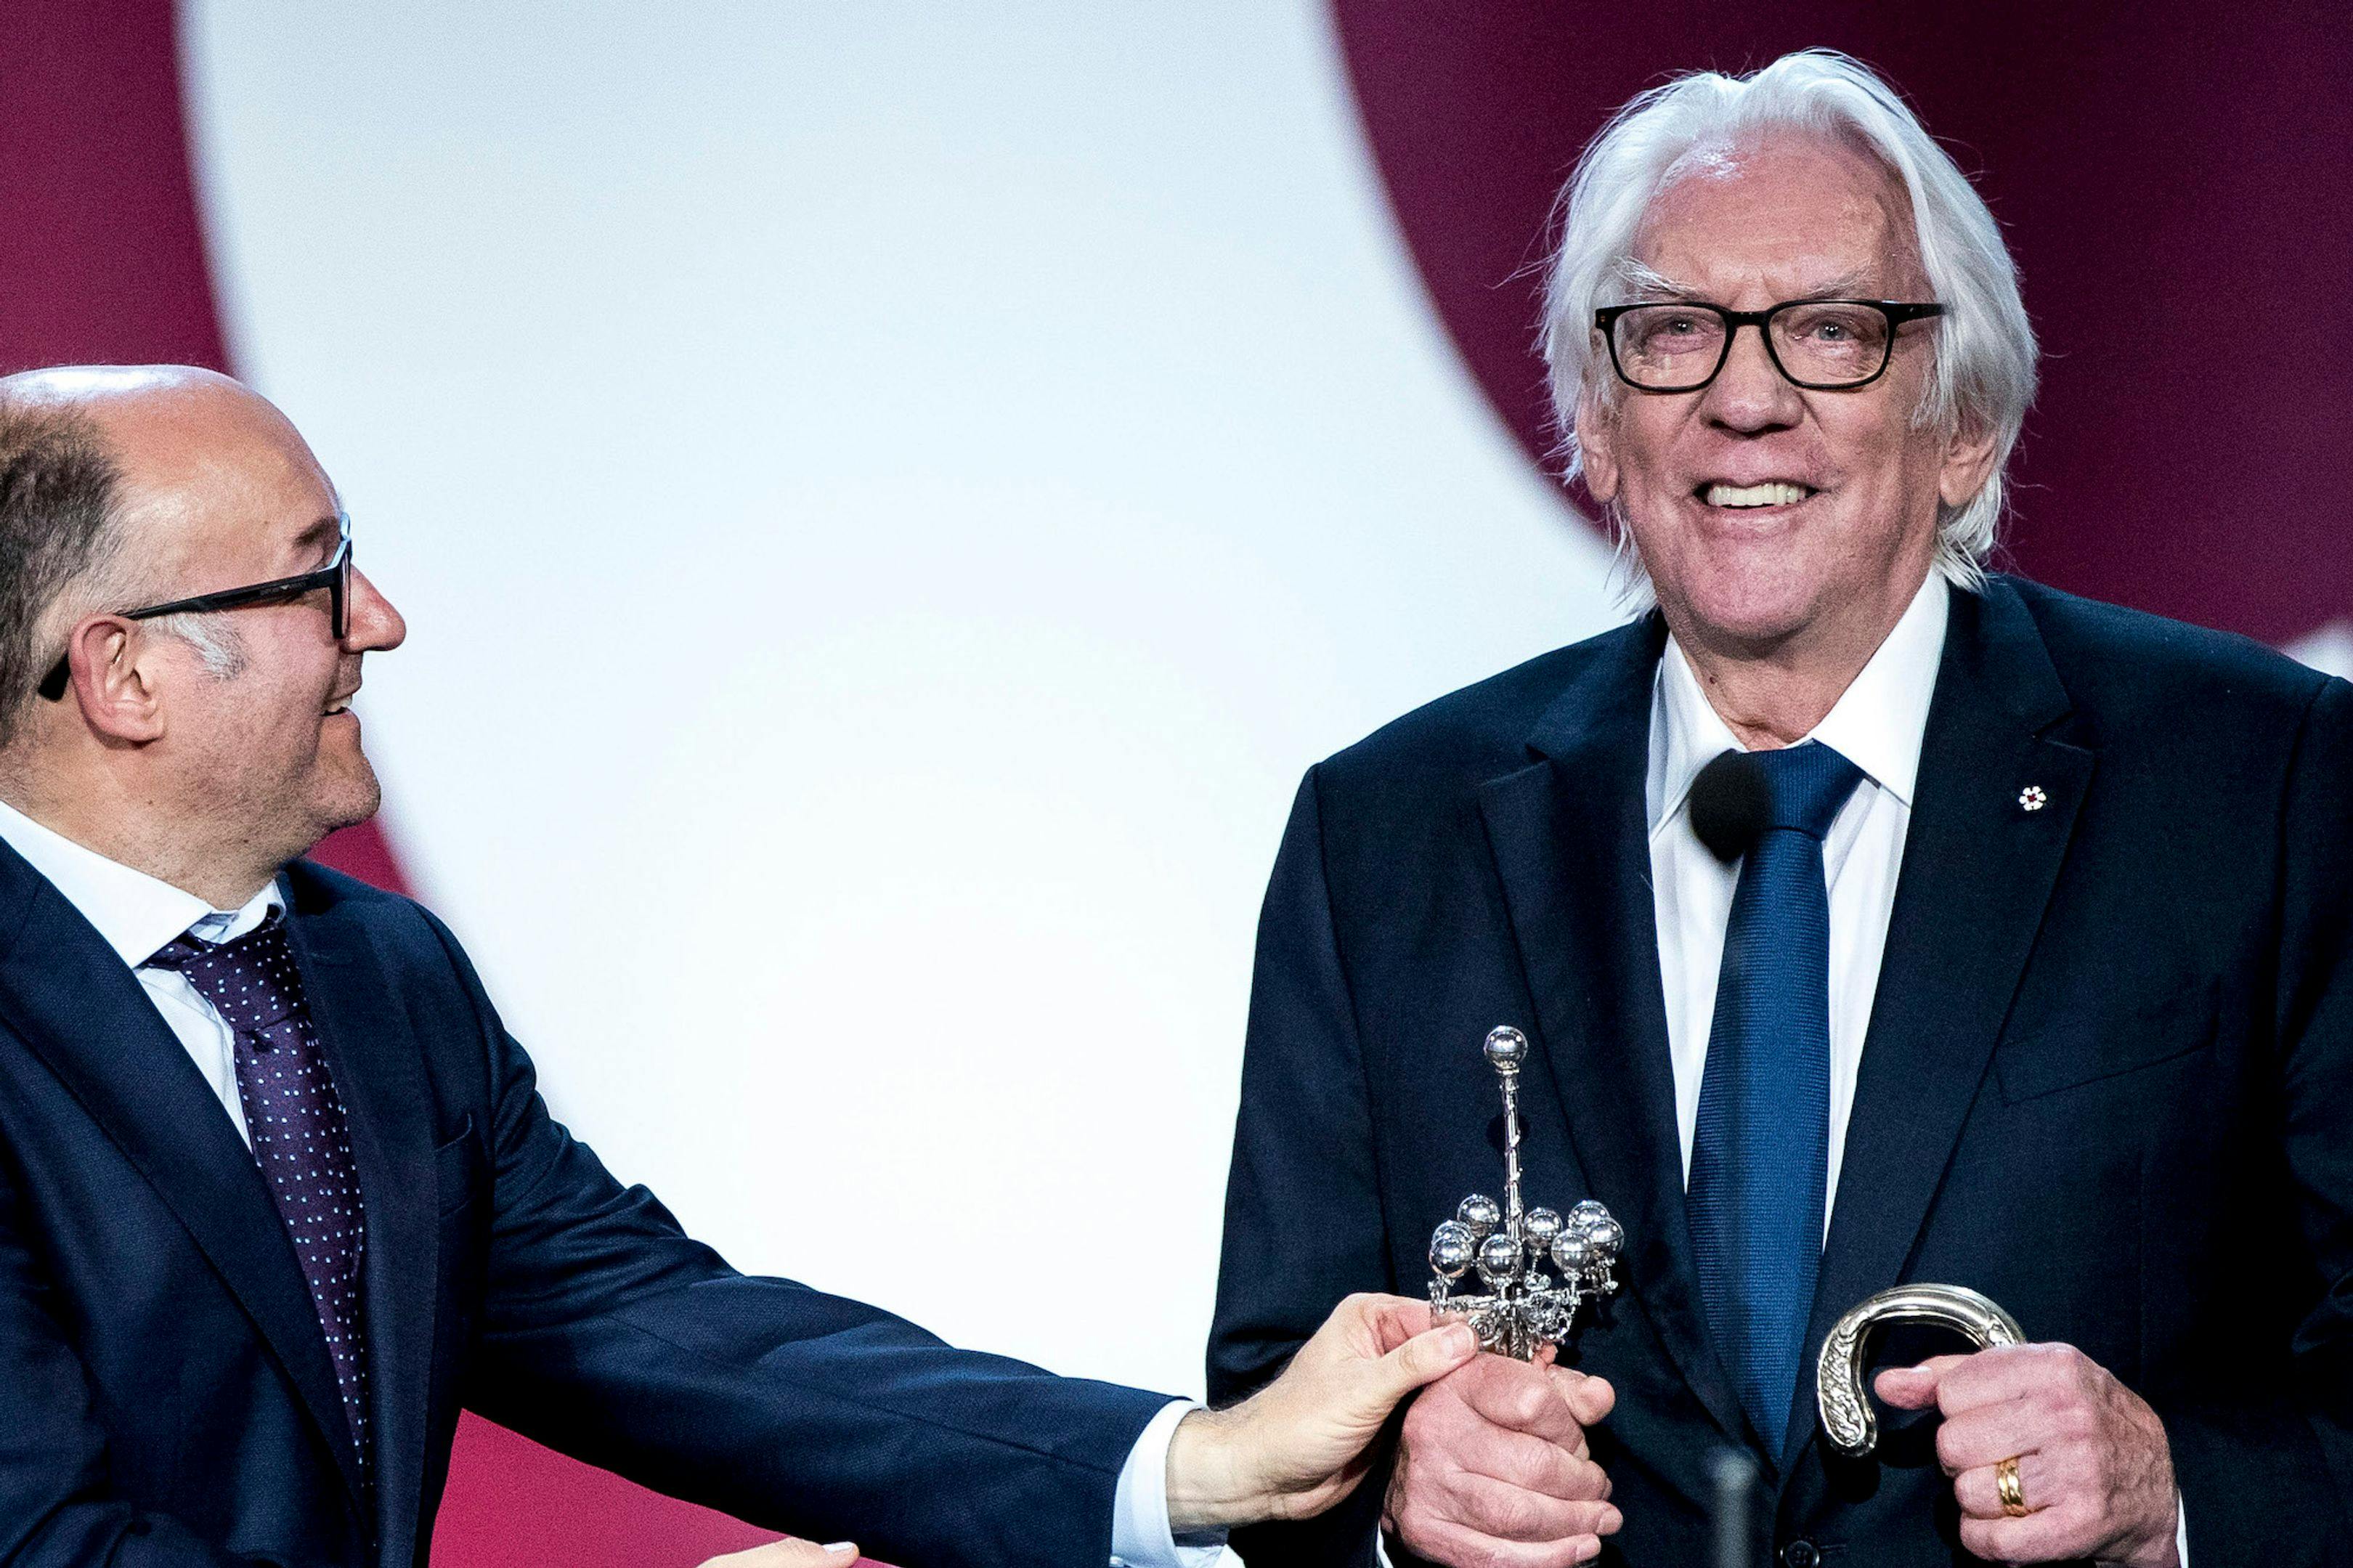 El actor Donald Sutherland recoge el Premio Donostia del Festival de San Sebastián, en 2019, de manos de José Luis Rebordinos